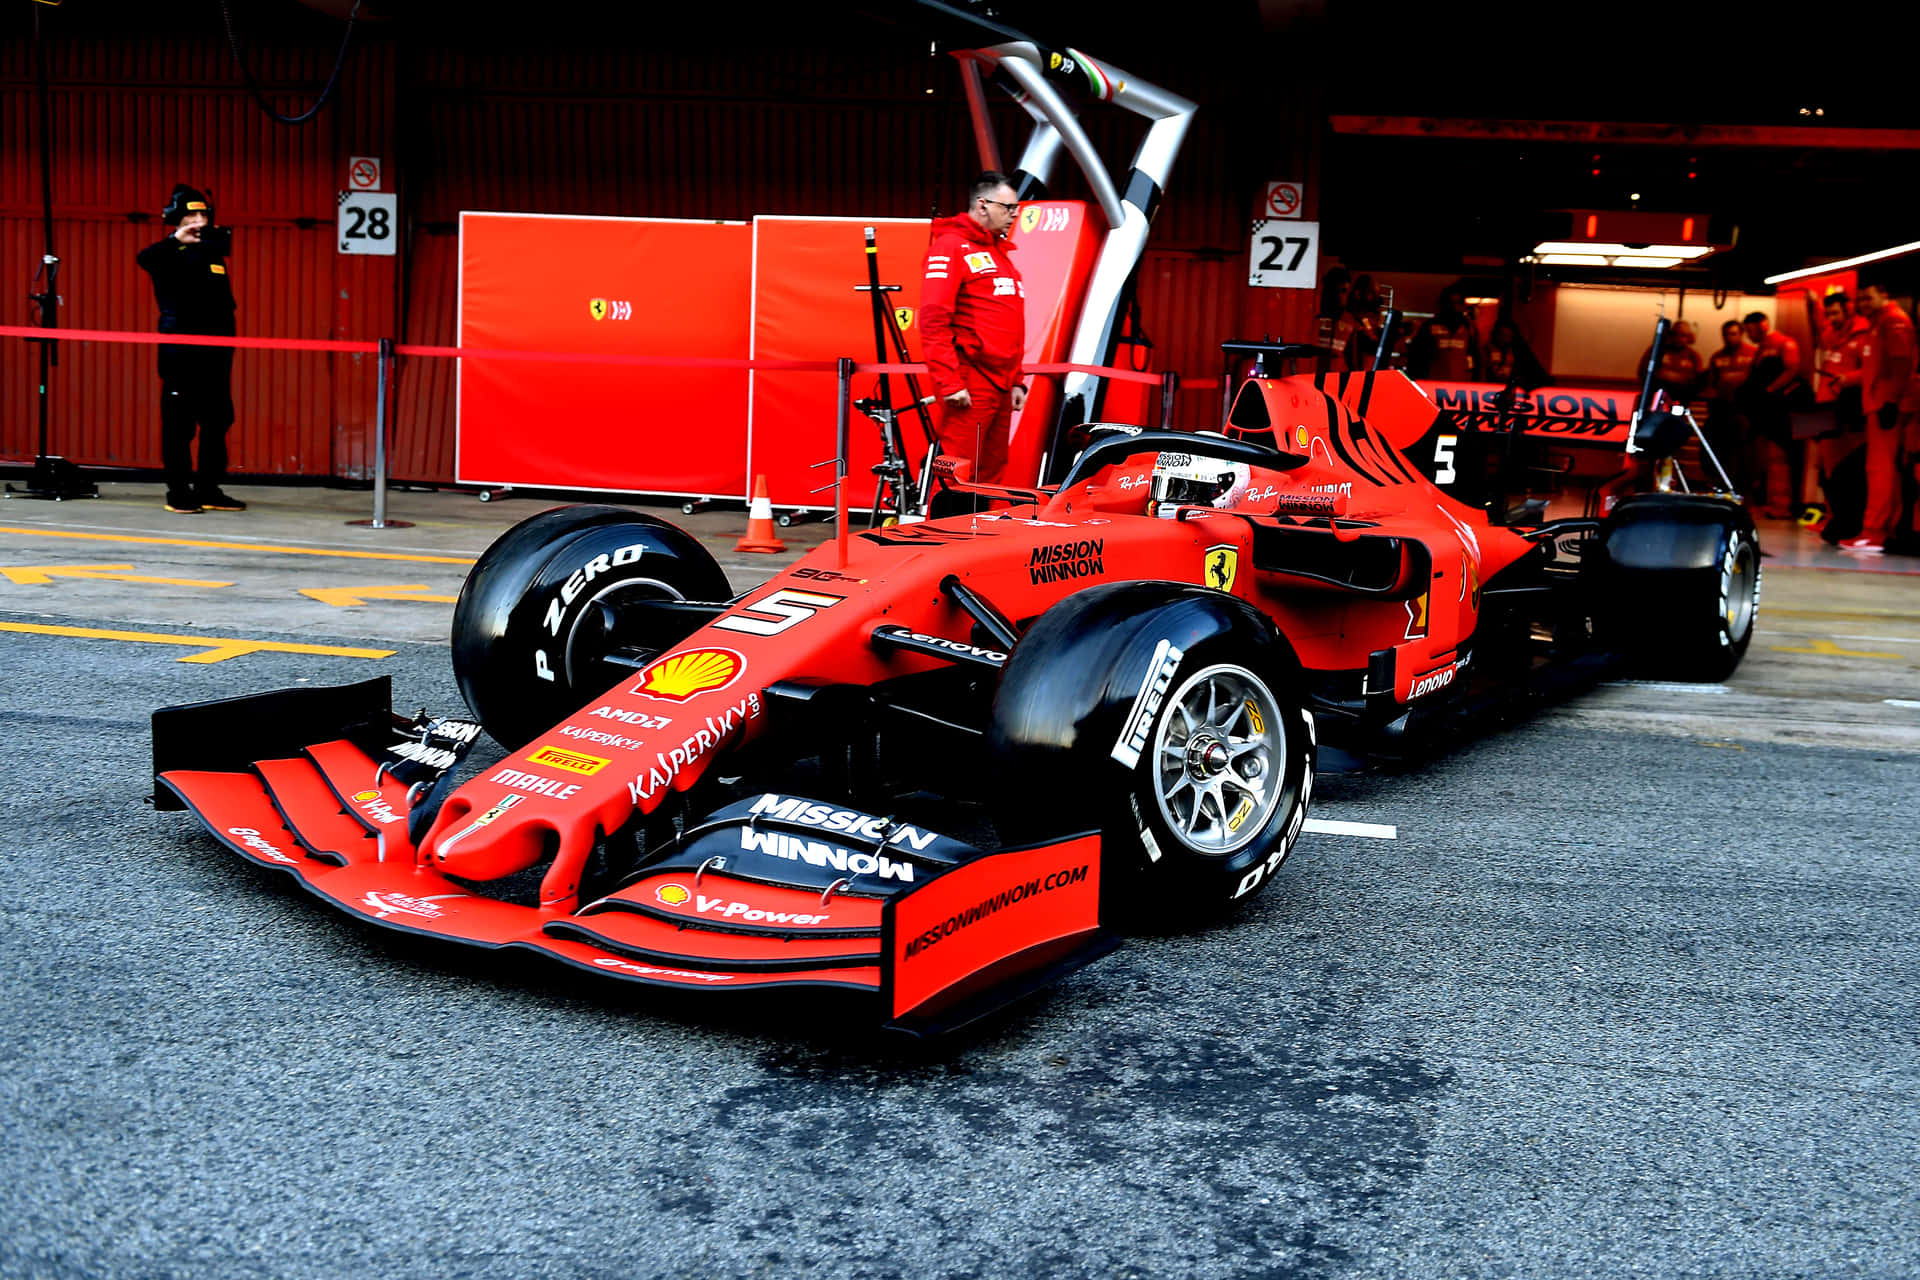 A Ferrari Racing Car